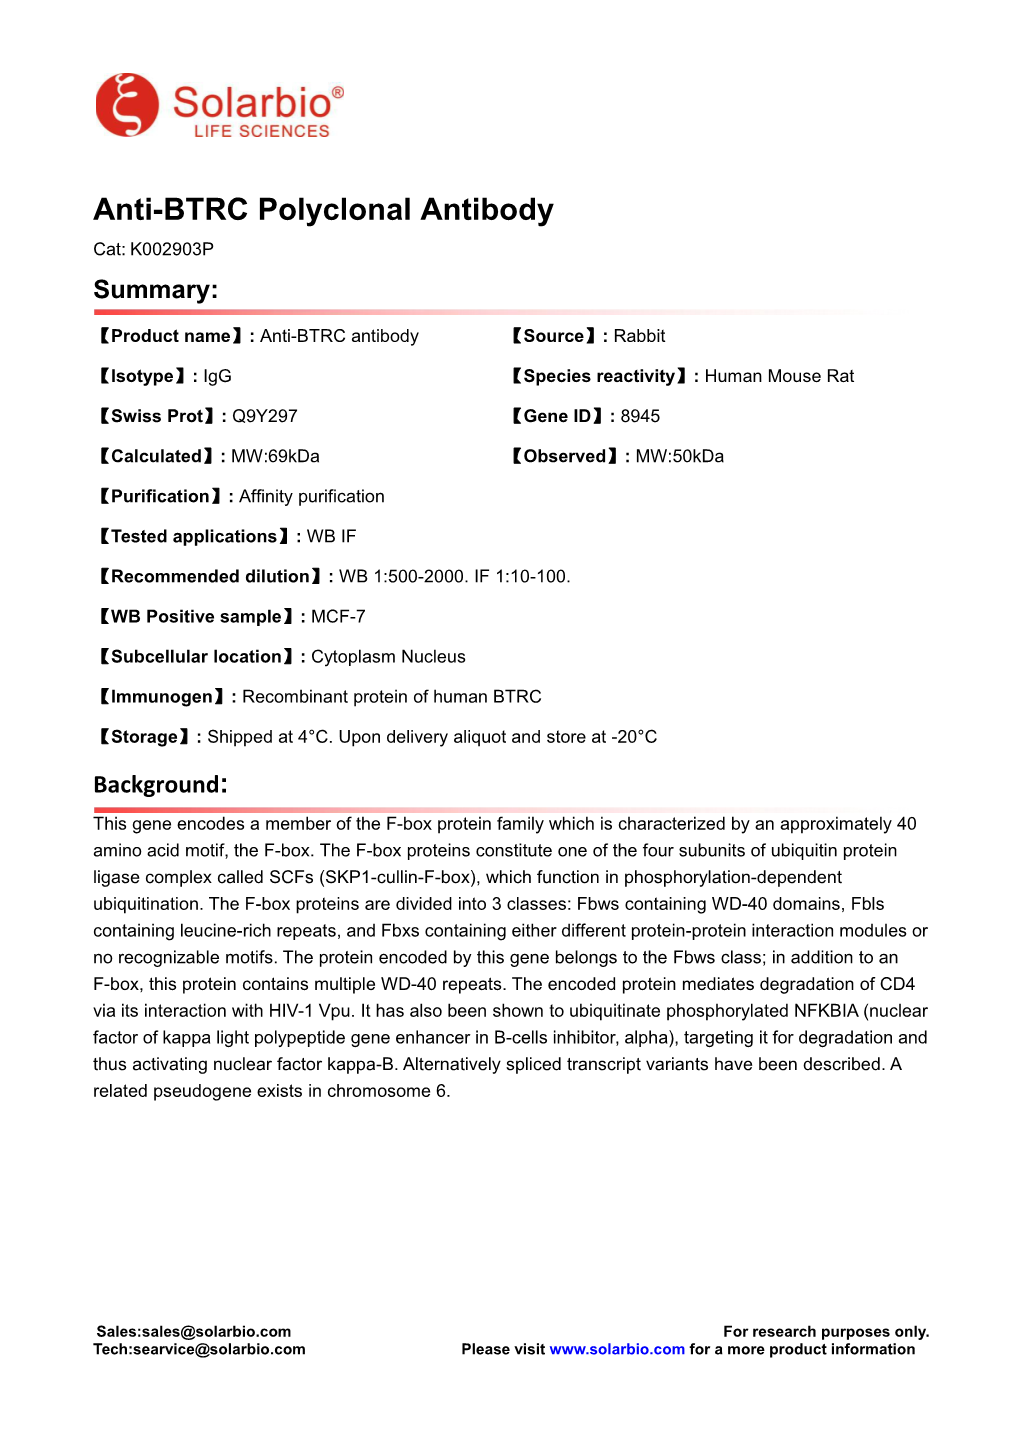 Anti-BTRC Polyclonal Antibody Cat: K002903P Summary